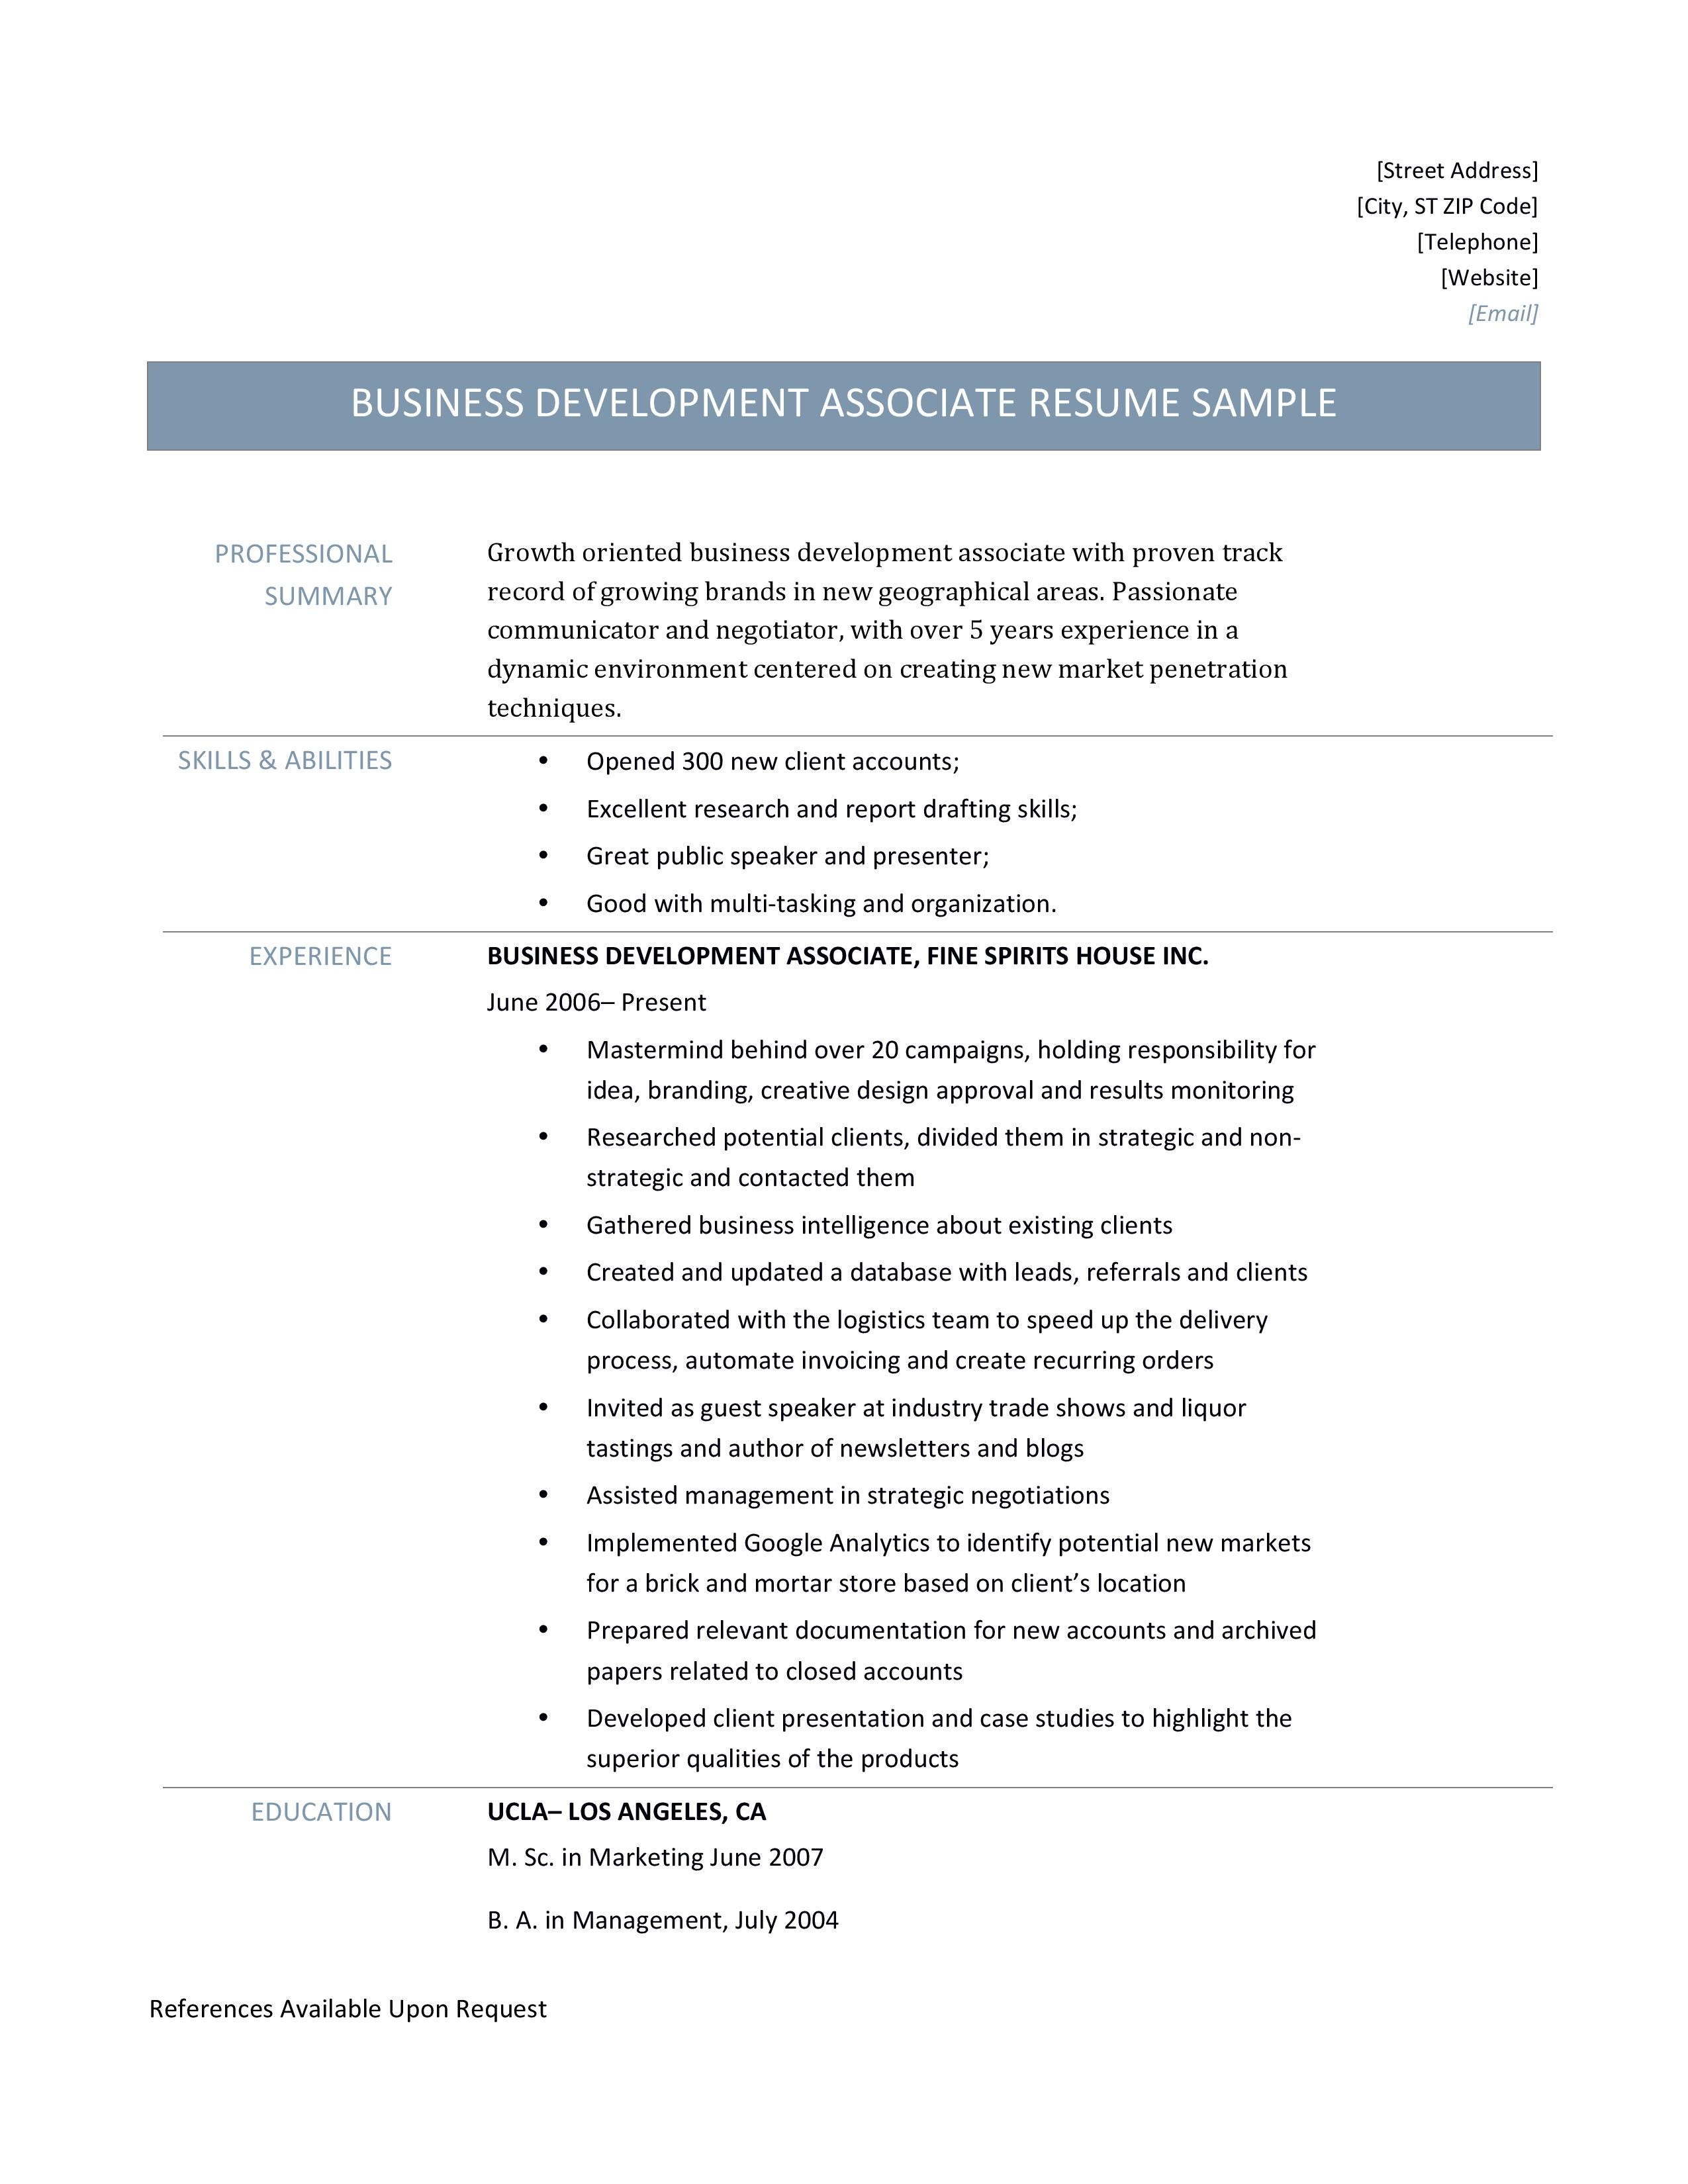 Business Development Associate Resume Template And Job